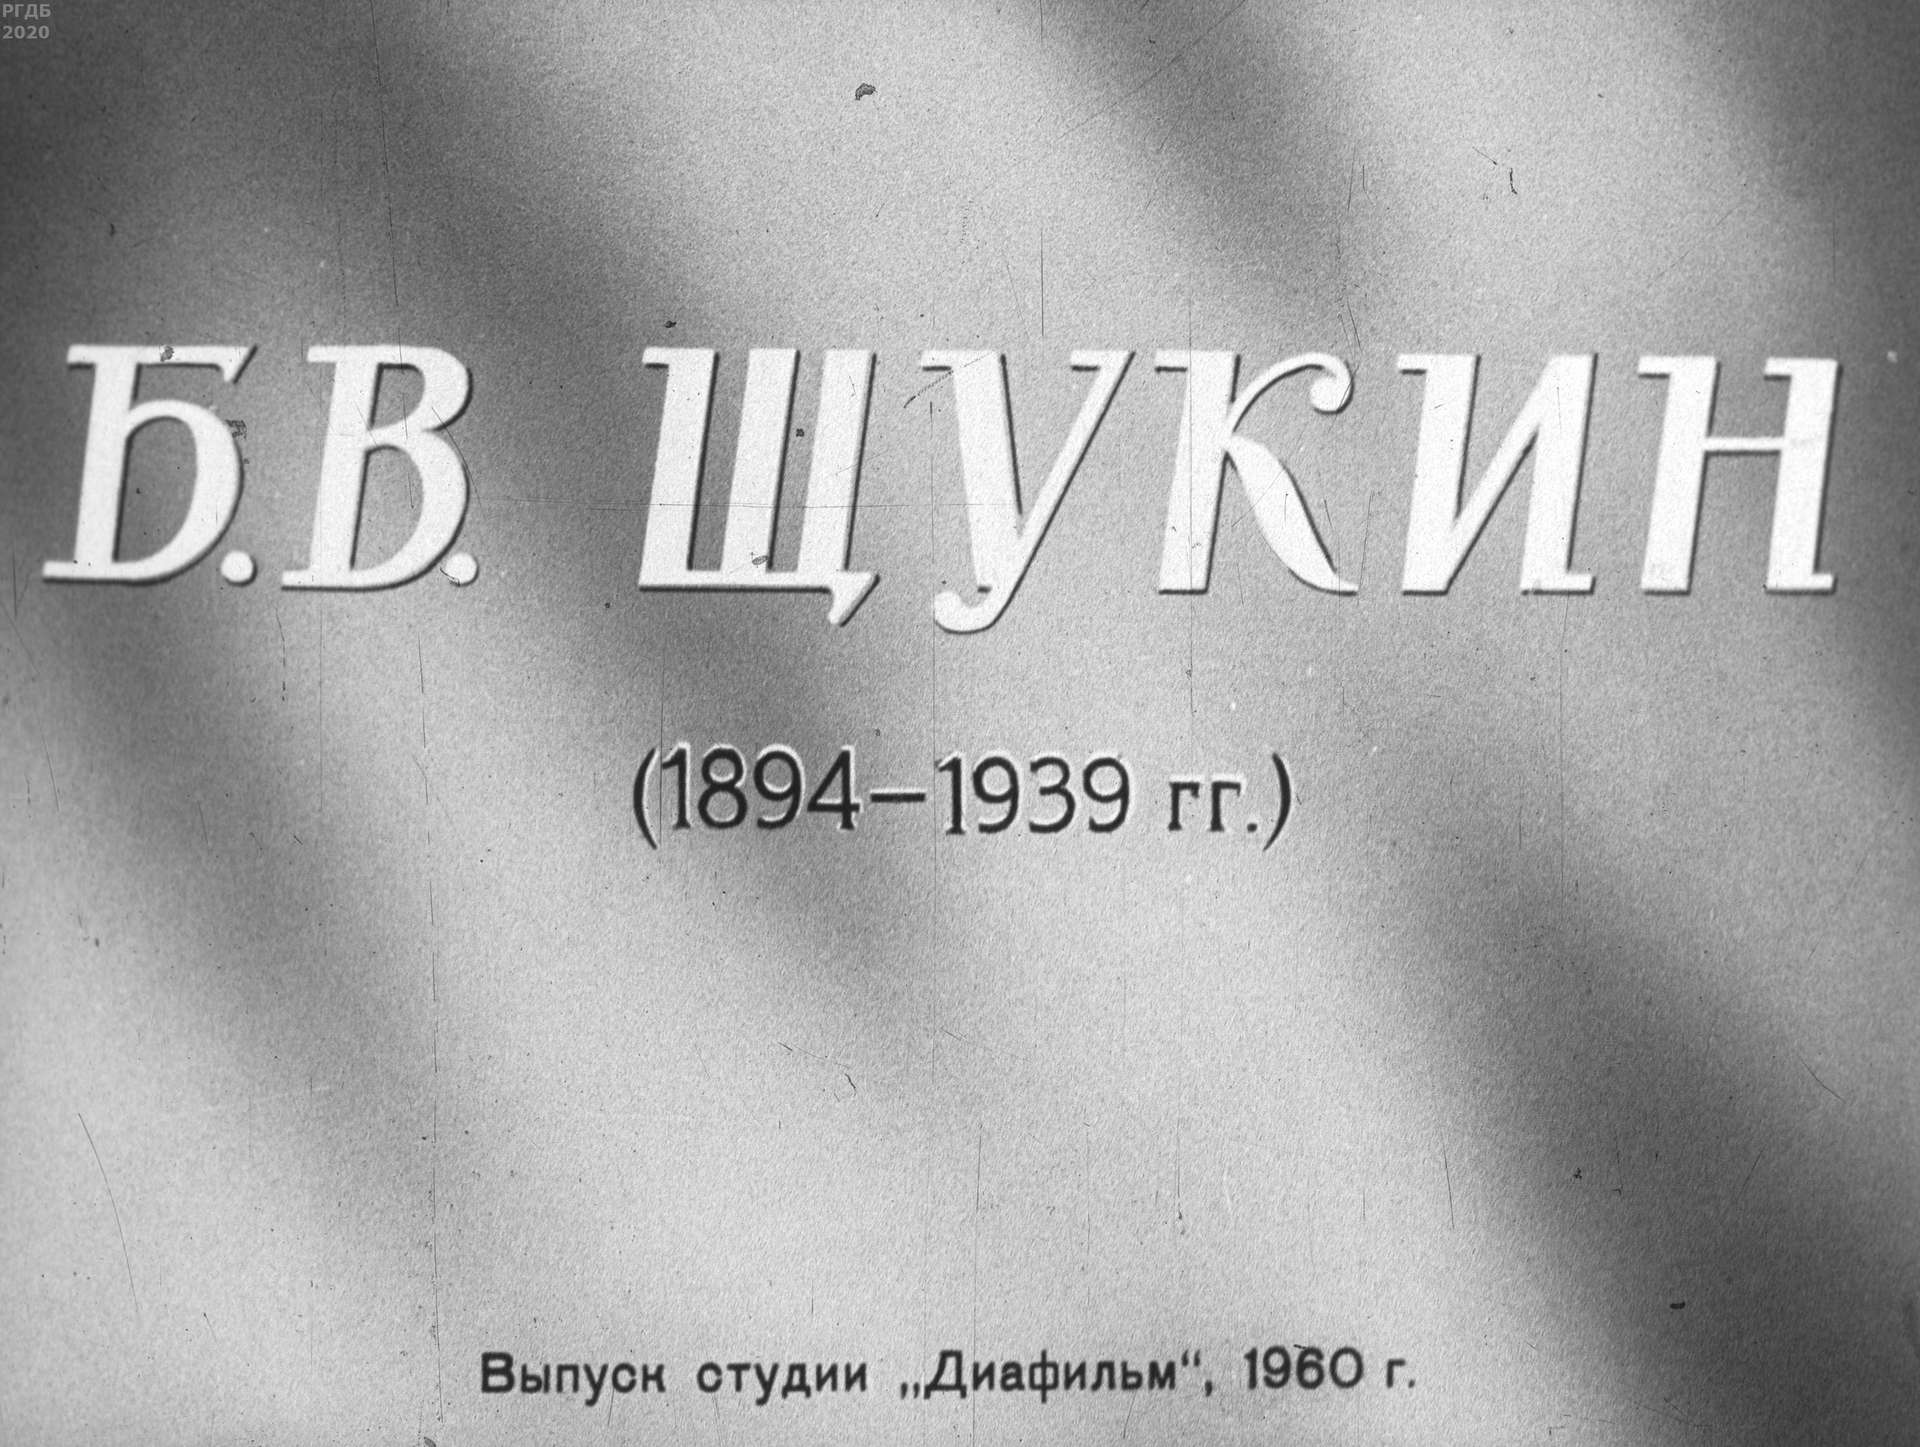 Б.В. Щукин (1894-1939 гг.)